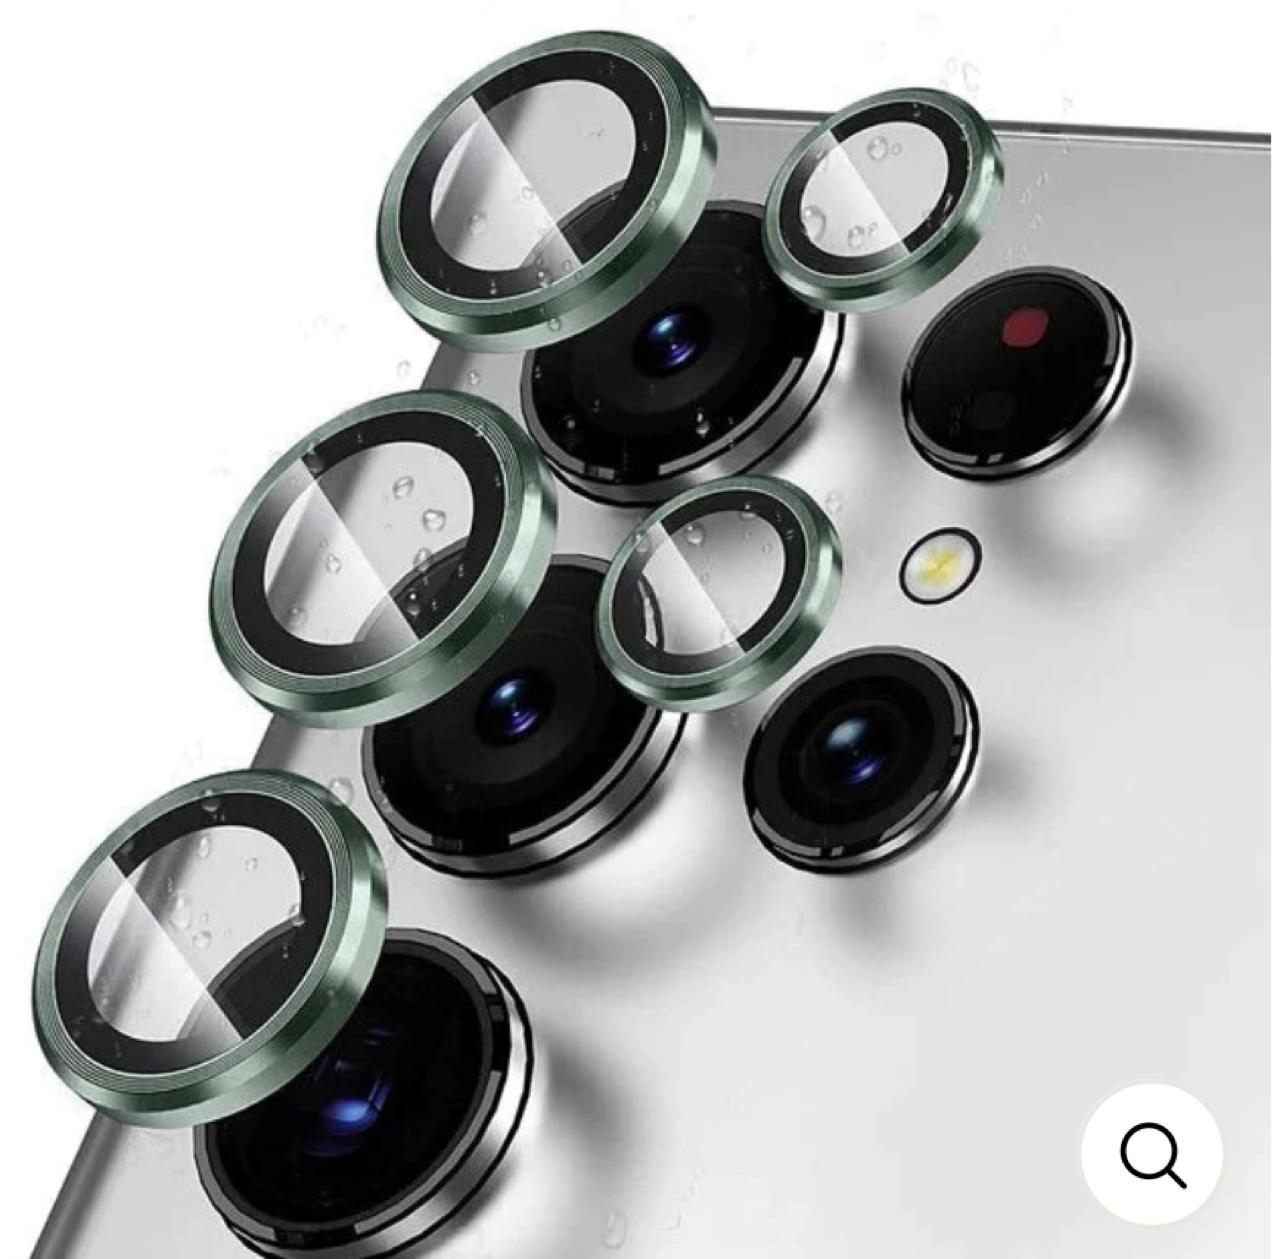 Titanium Camera Lense Protector 9H Aluminium Ring for S Series